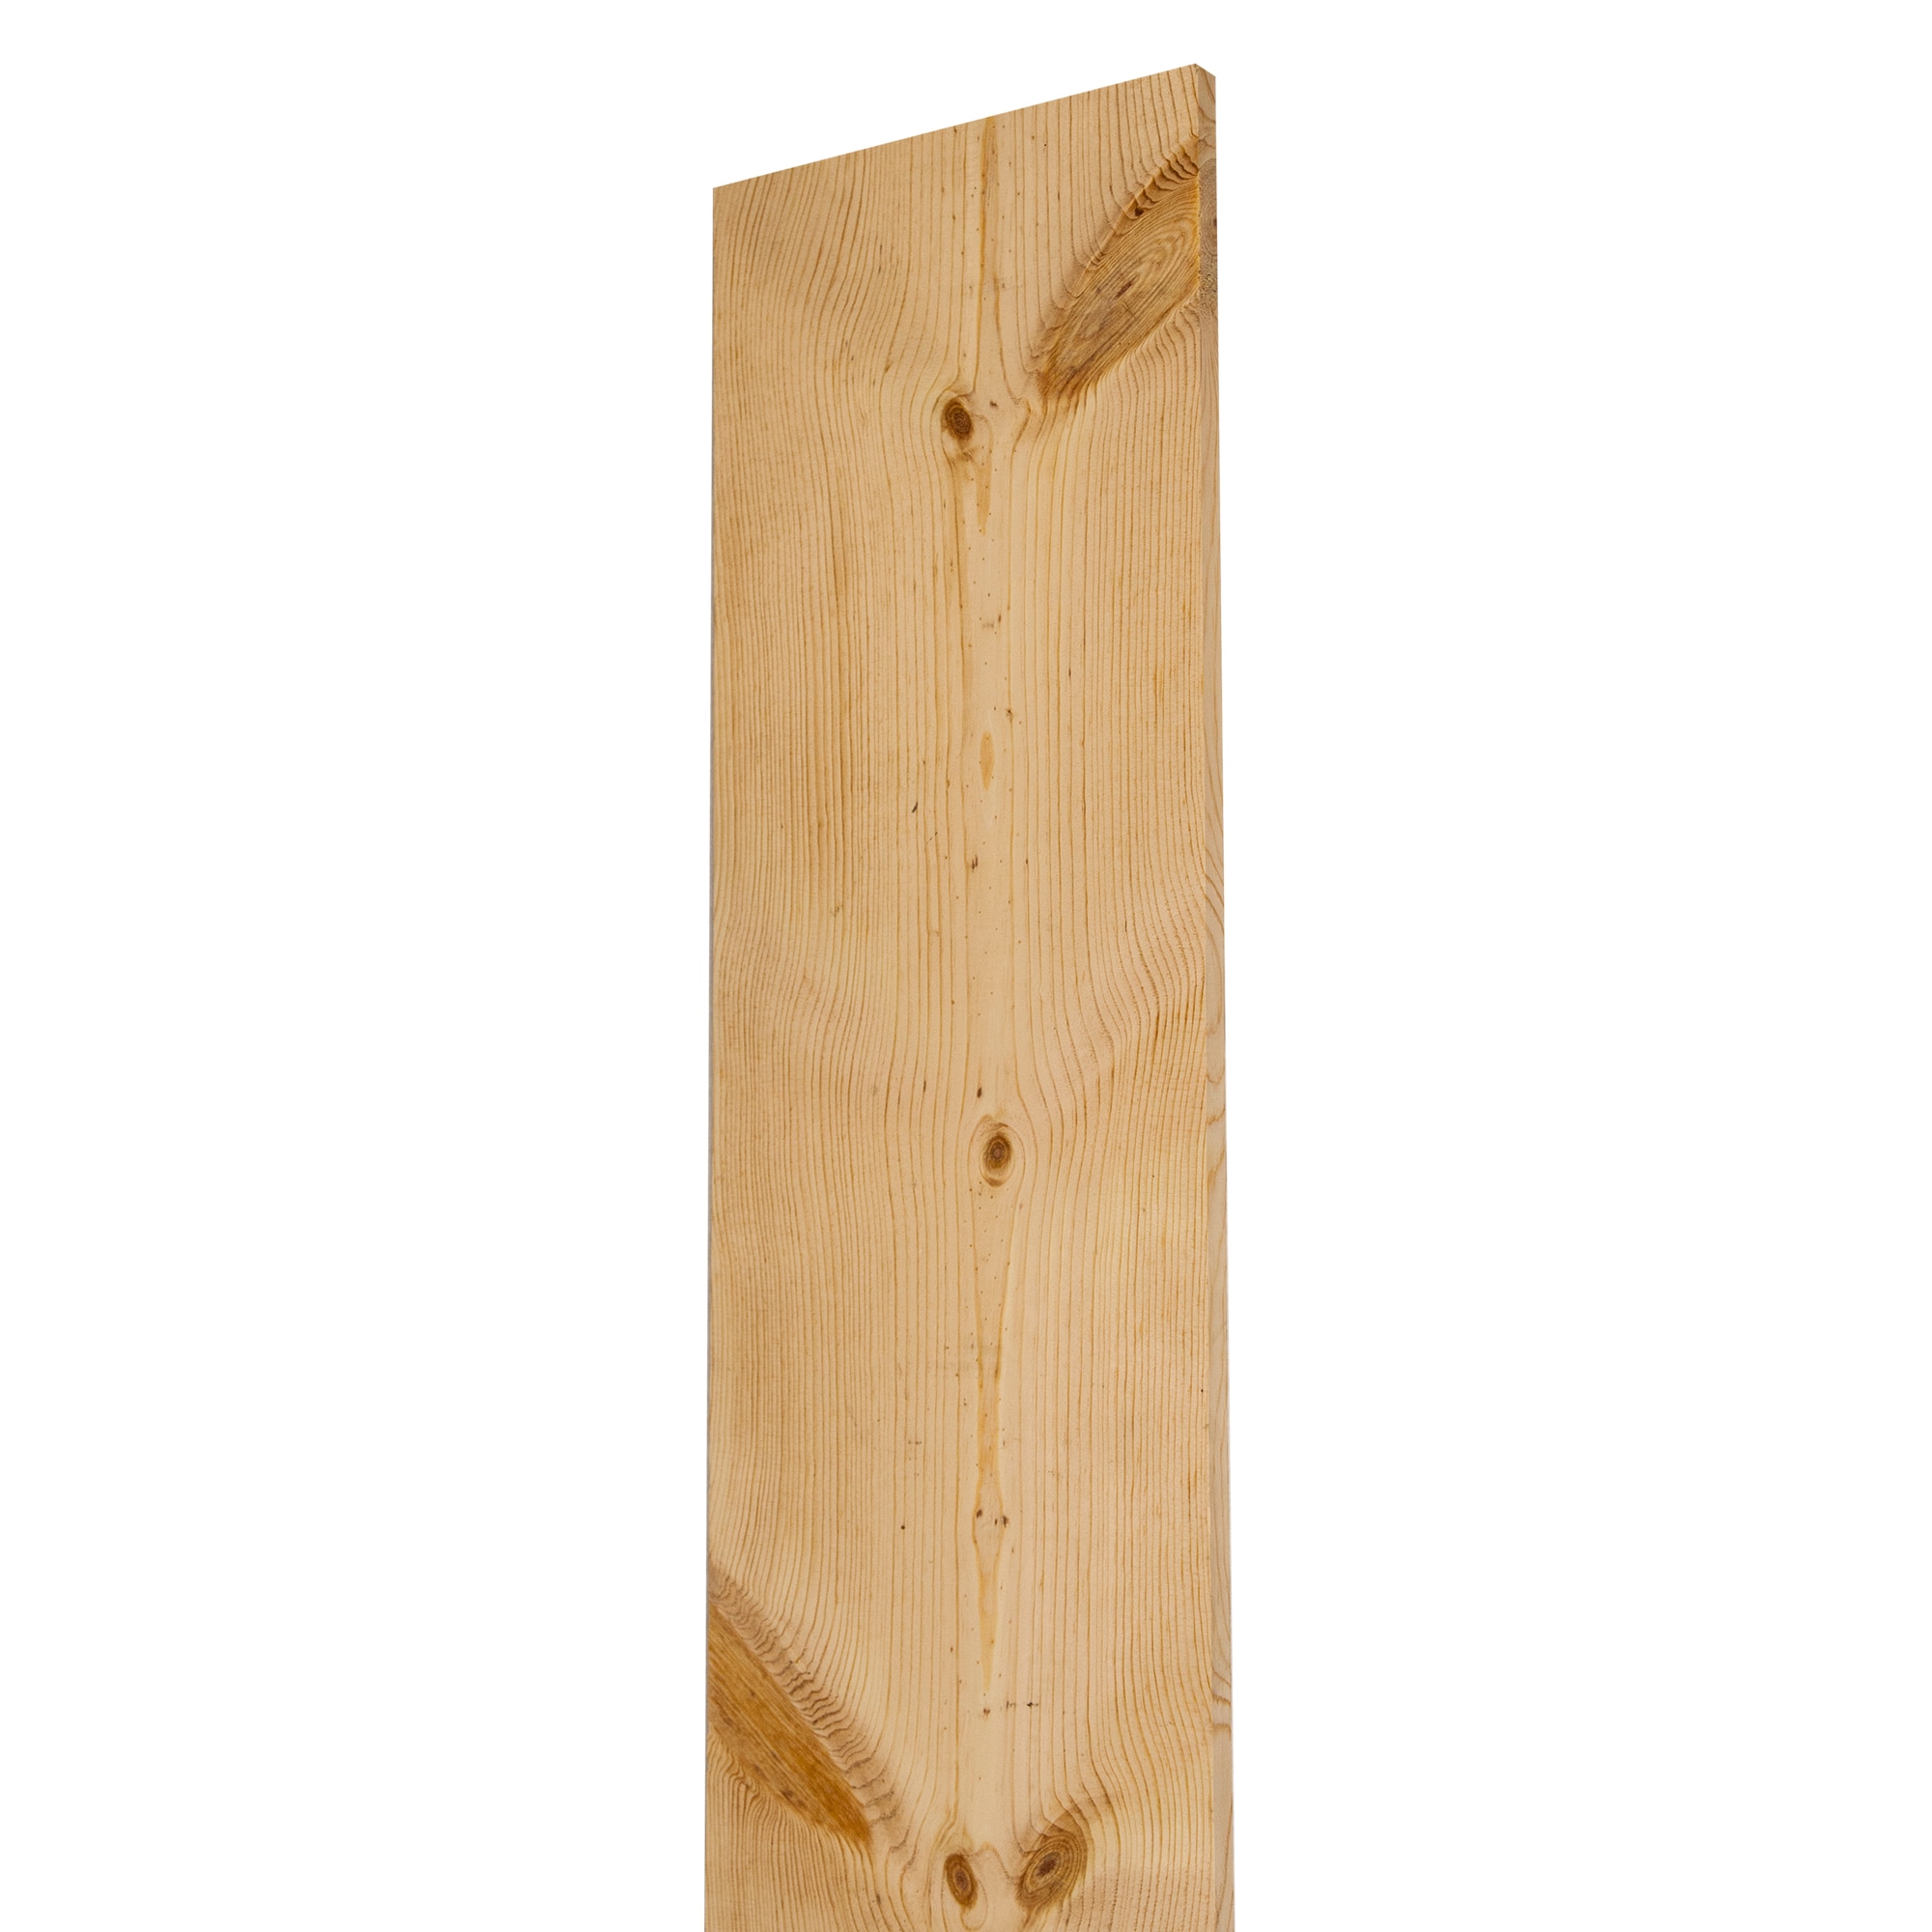 Www boards. Pine Board. Wood Board.